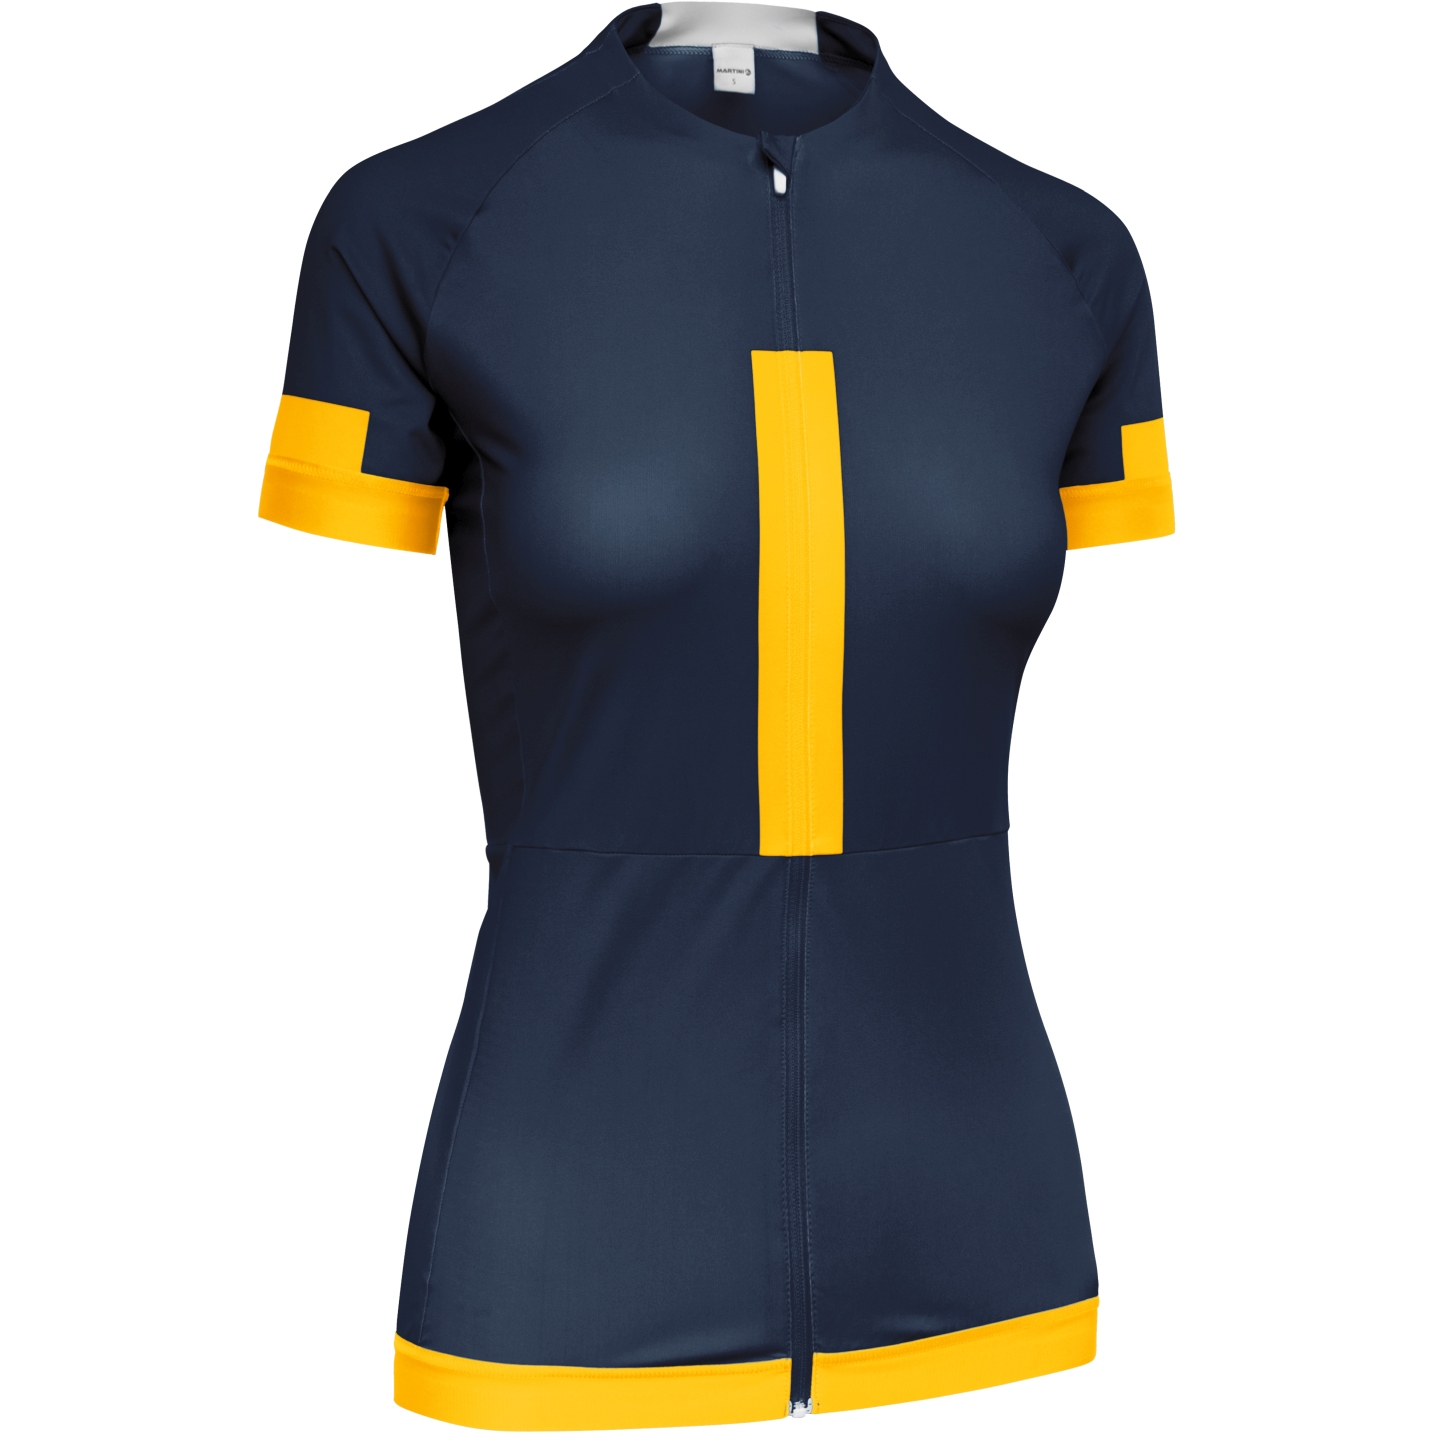 Image of Martini Sportswear Kiga Women's Jersey - true navy/sole